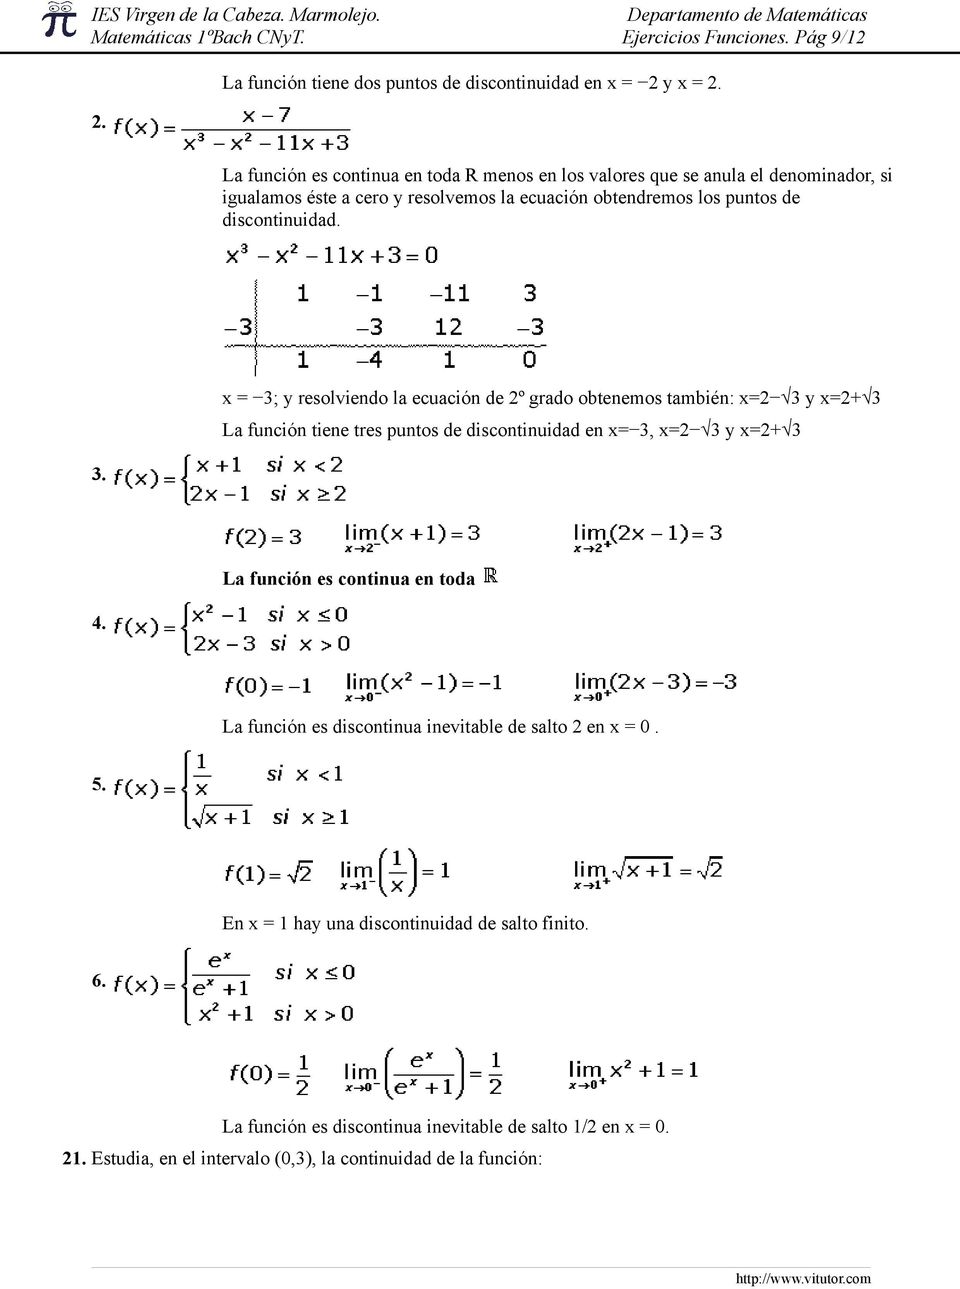 2. La función es continua en toda R menos en los valores que se anula el denominador, si igualamos éste a cero y resolvemos la ecuación obtendremos los puntos de discontinuidad. 3.